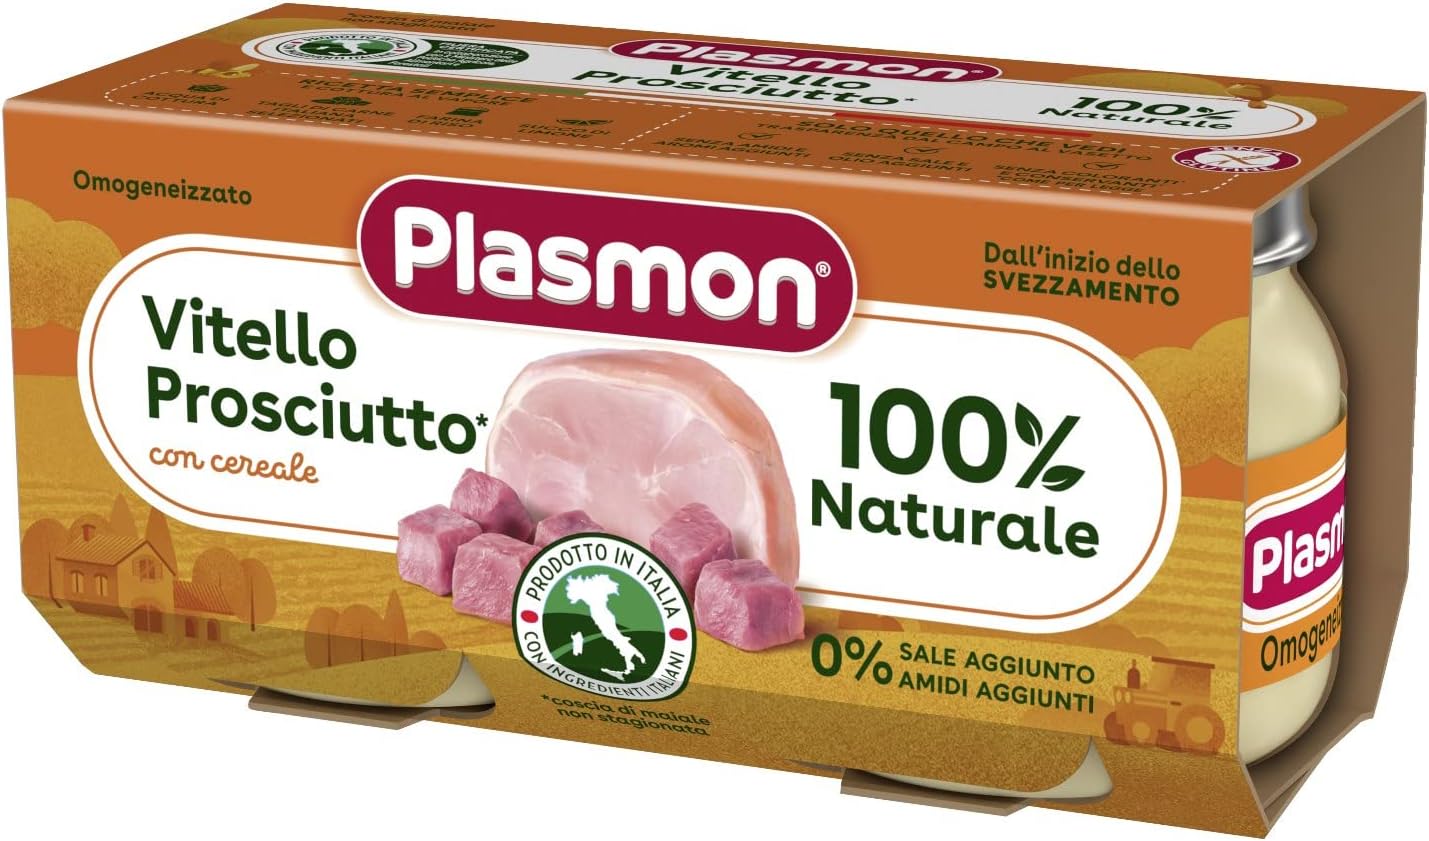 Plasmon Omogeneizzato Carne Vitello, prosciutto e cereale 2x80g